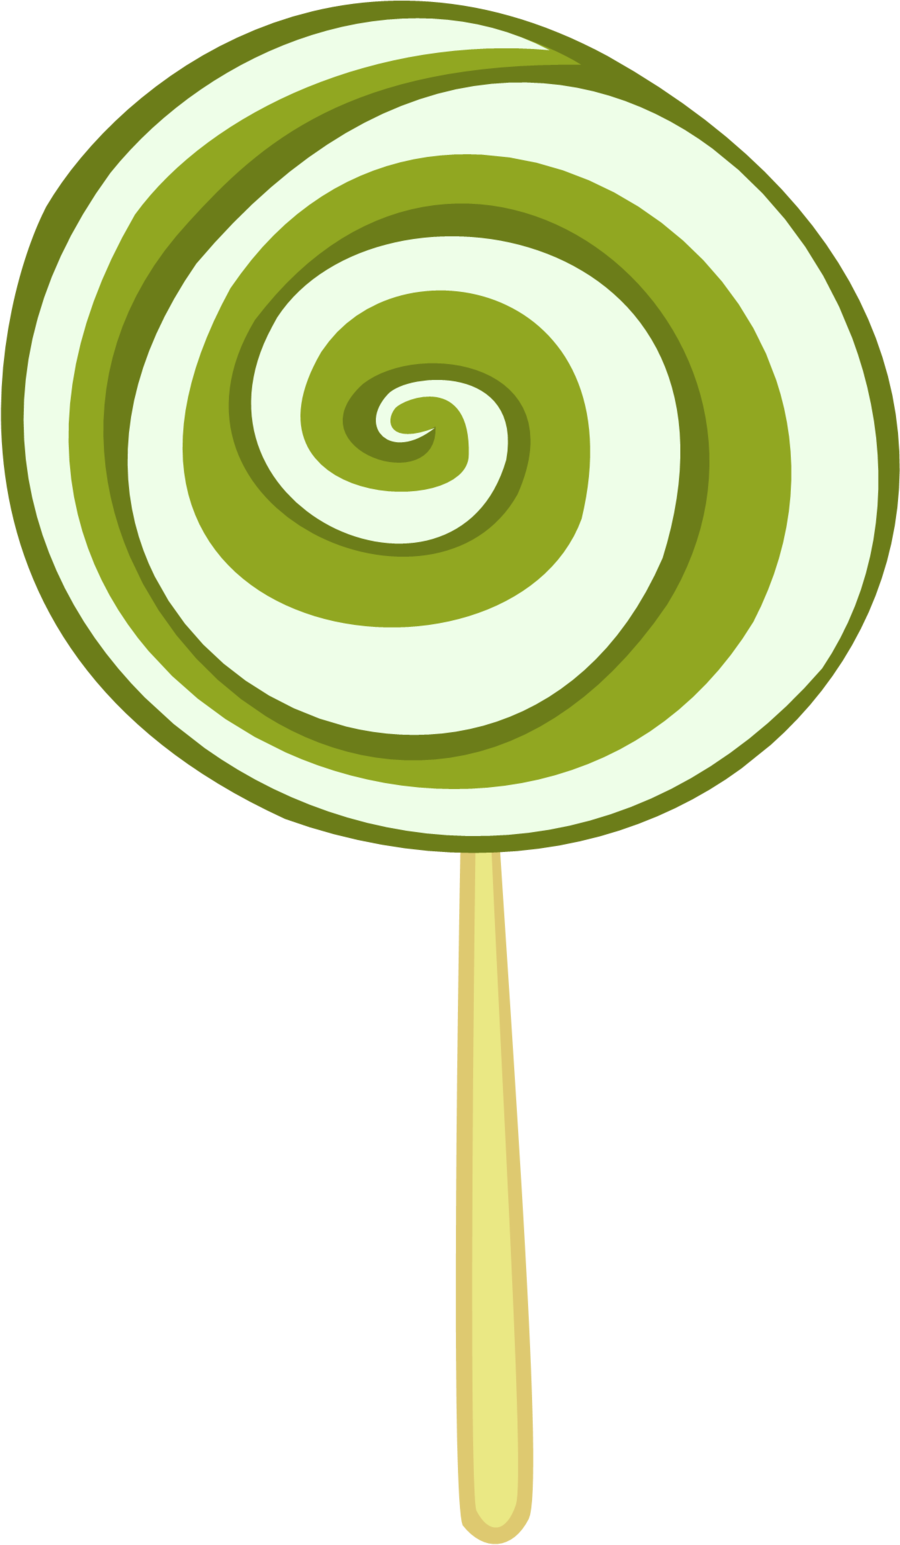 Green lollipop clip art at clker vector clip art